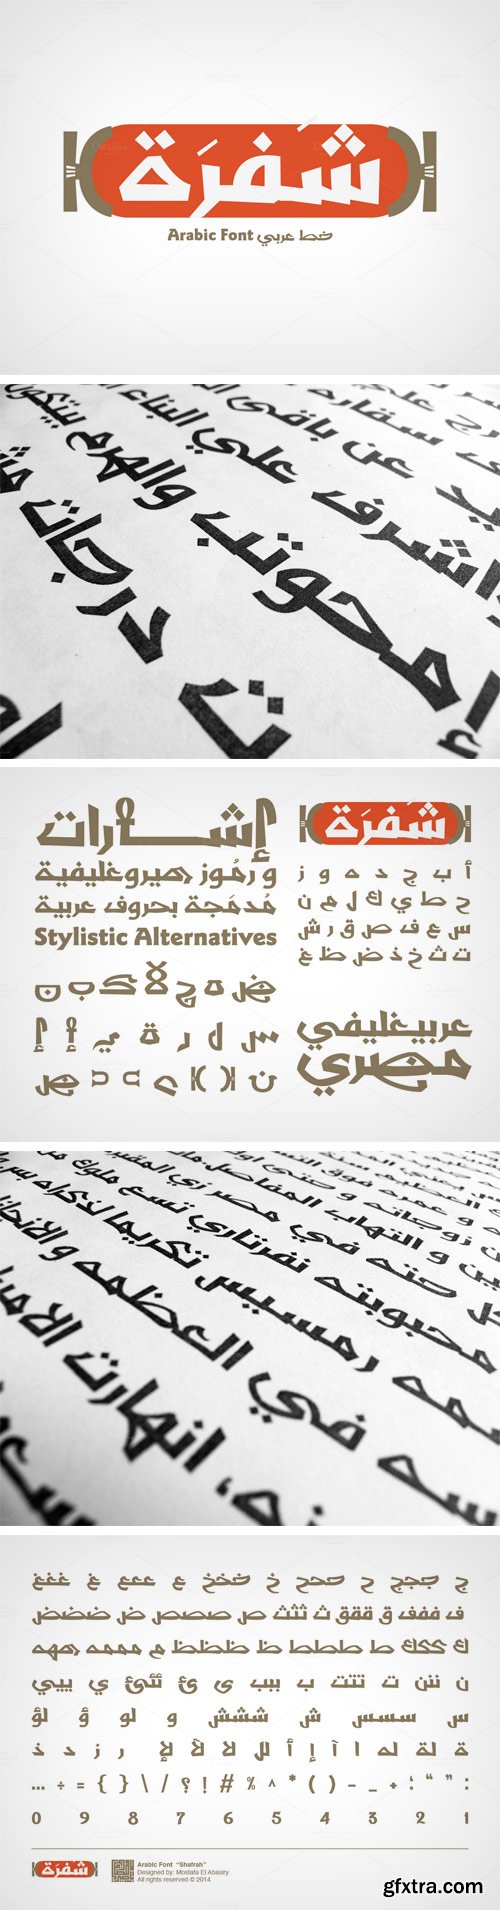 Shafrah Font Family